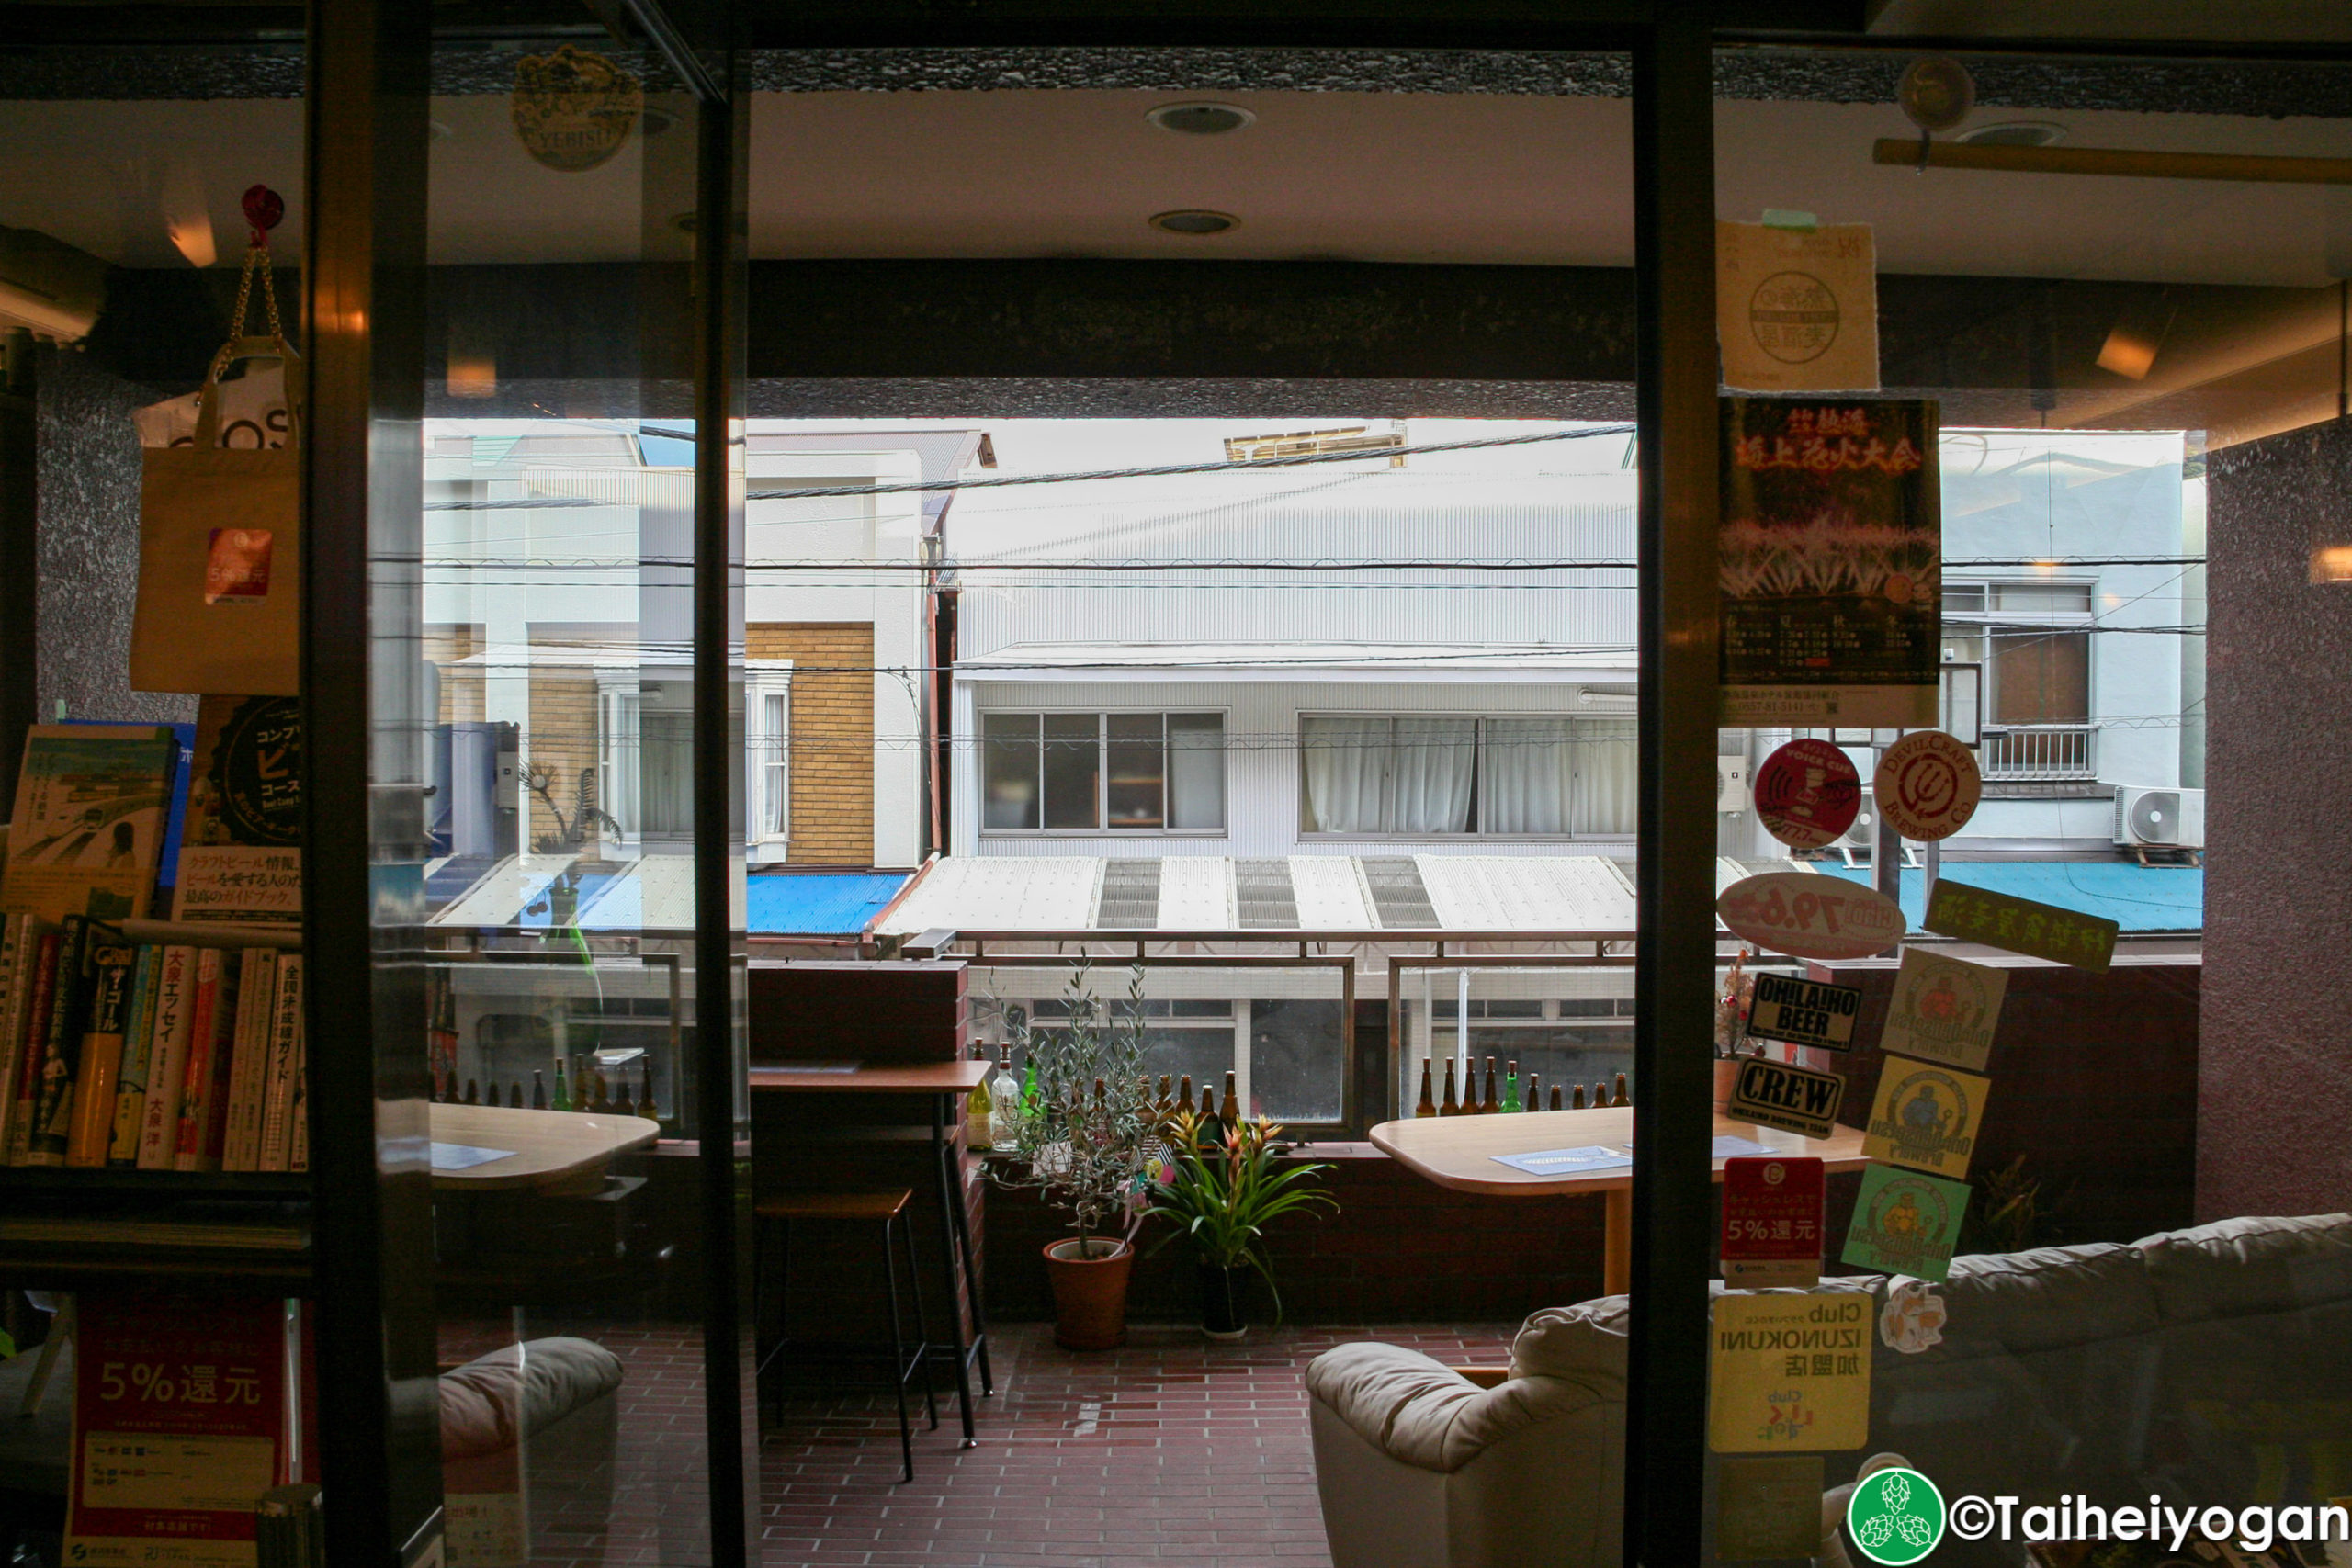 Craft Beer Café 熱海の麥酒屋・Craft Beer Café Atami Mugishuya - Interior - Exit